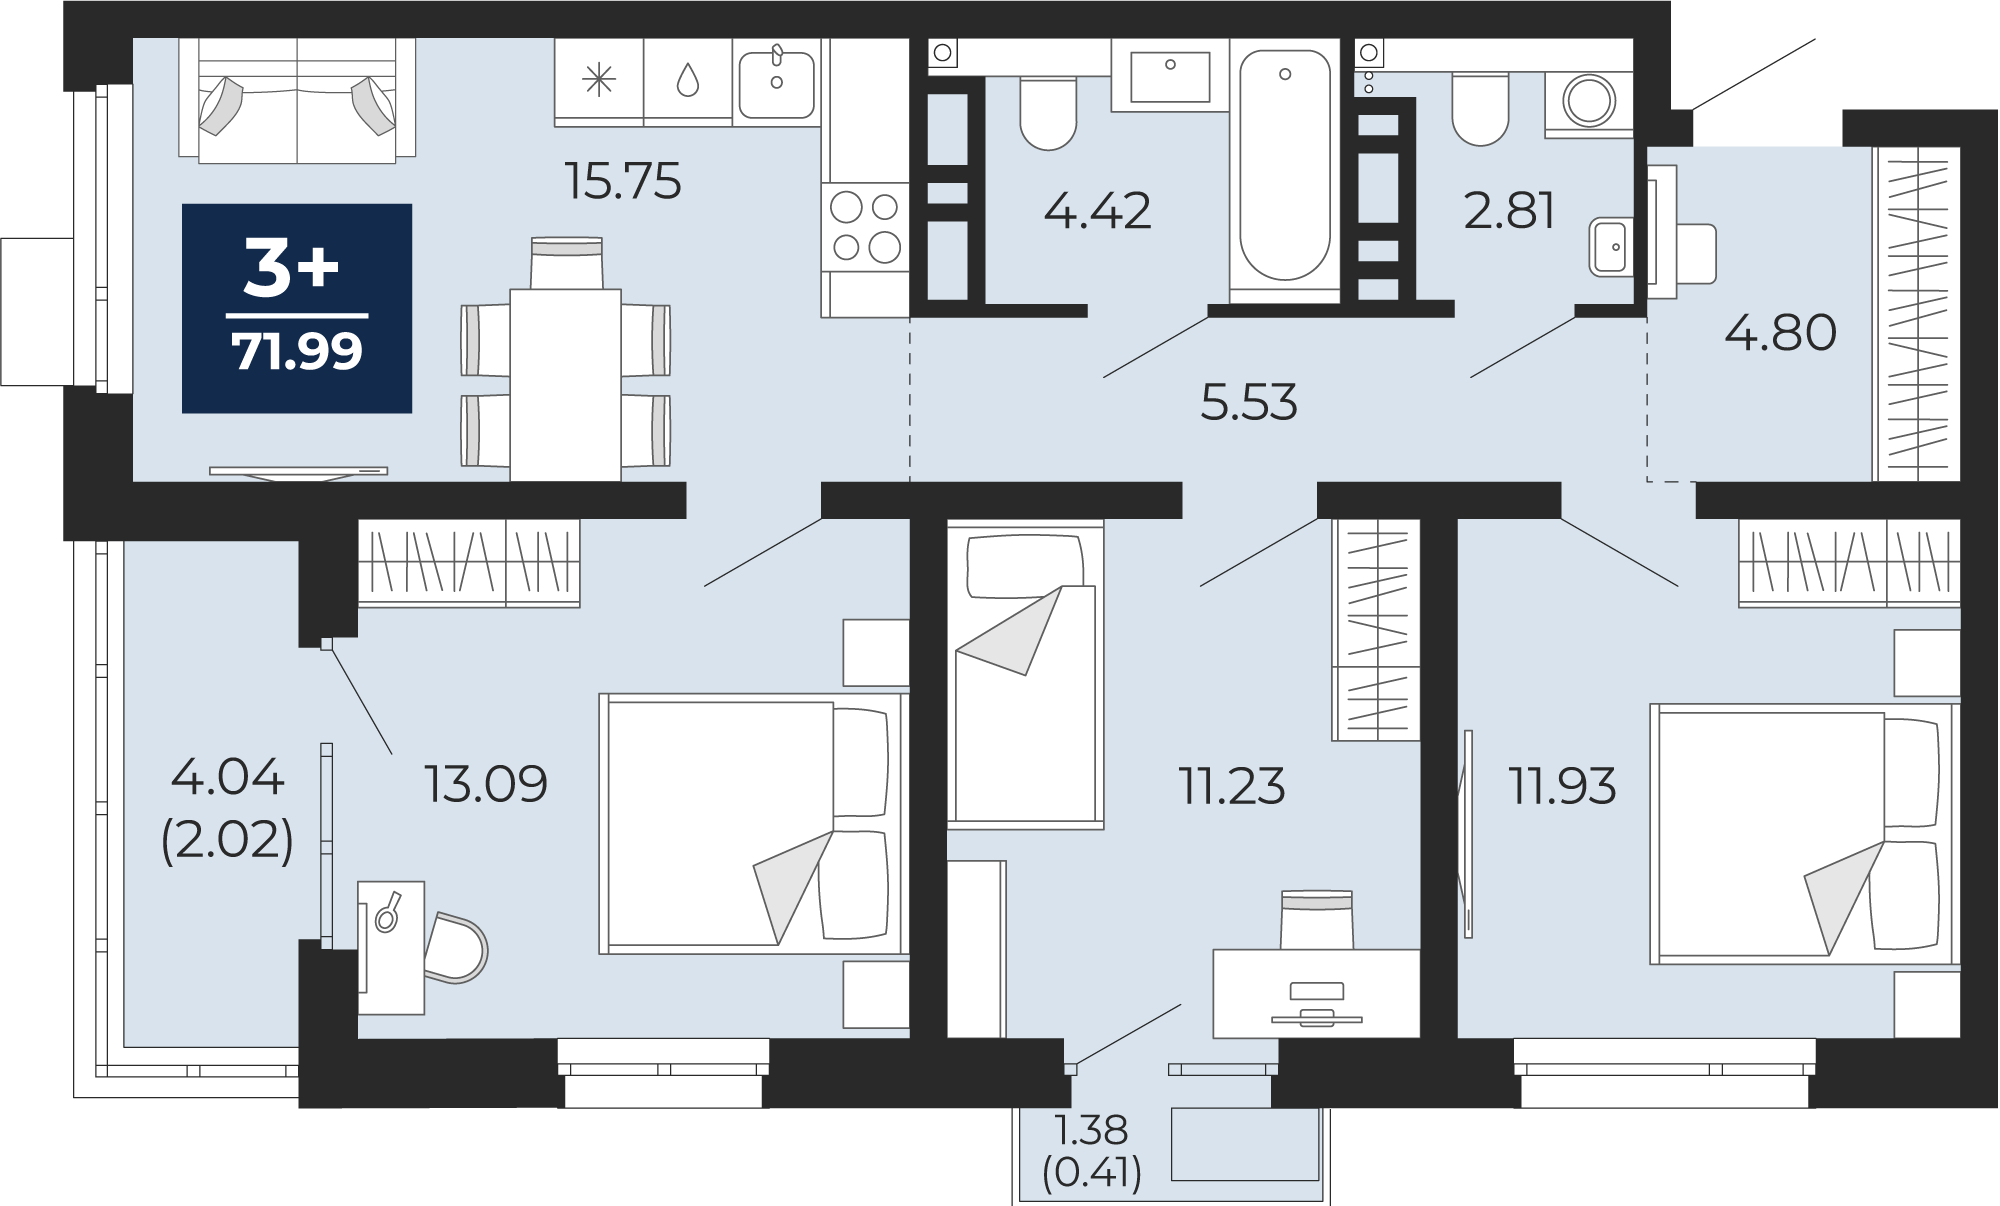 Квартира № 398, 3-комнатная, 71.99 кв. м, 13 этаж